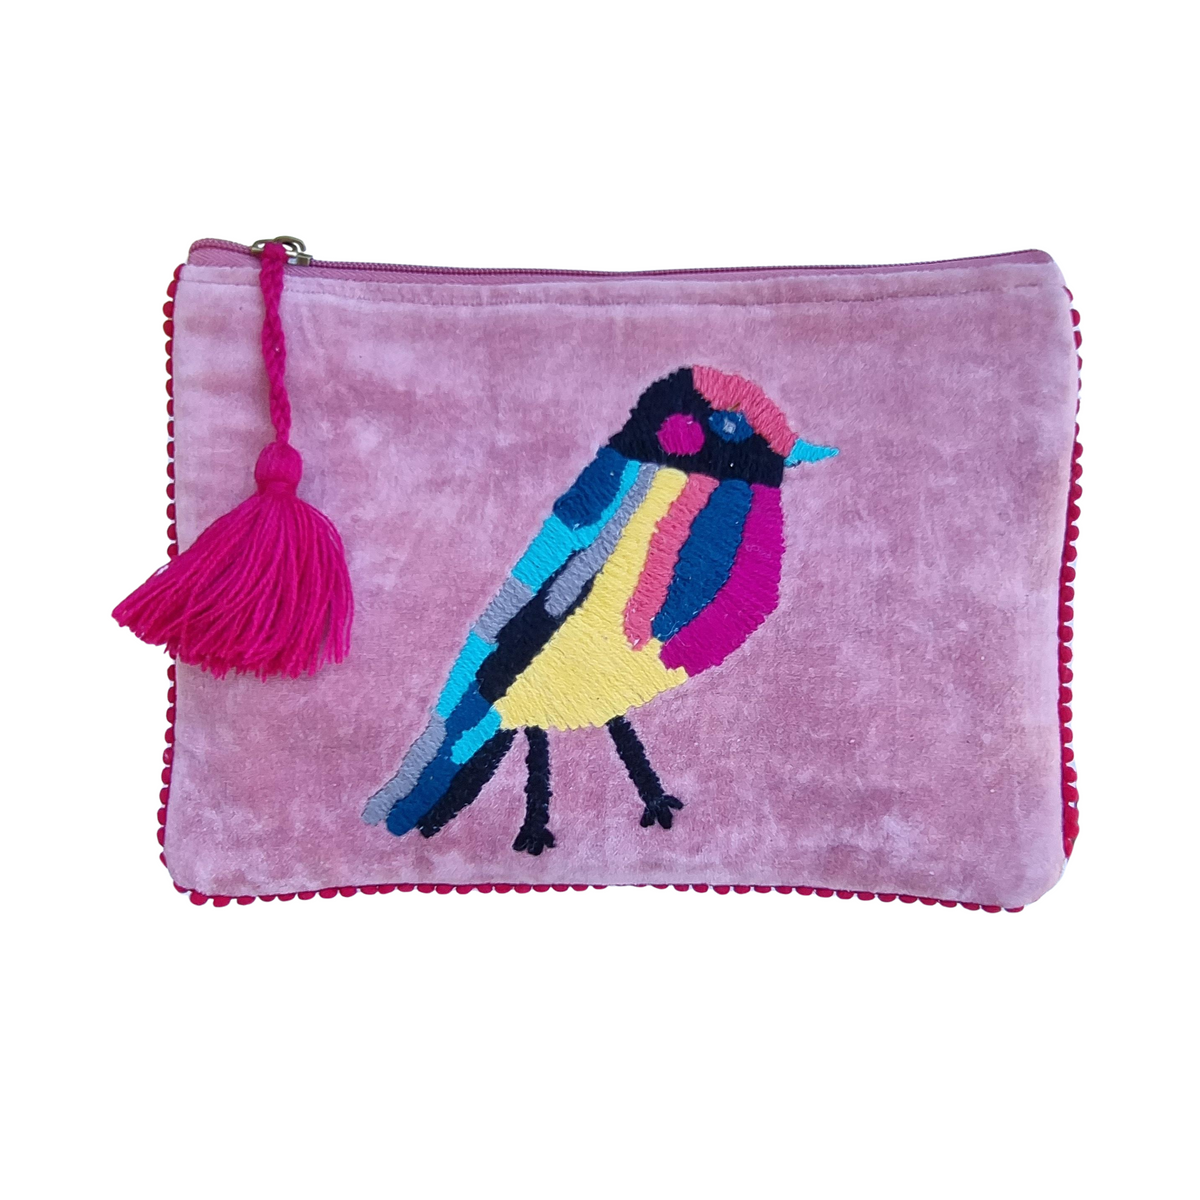 Zoda - Embroidered Velvet Clutch -  Pink Bird